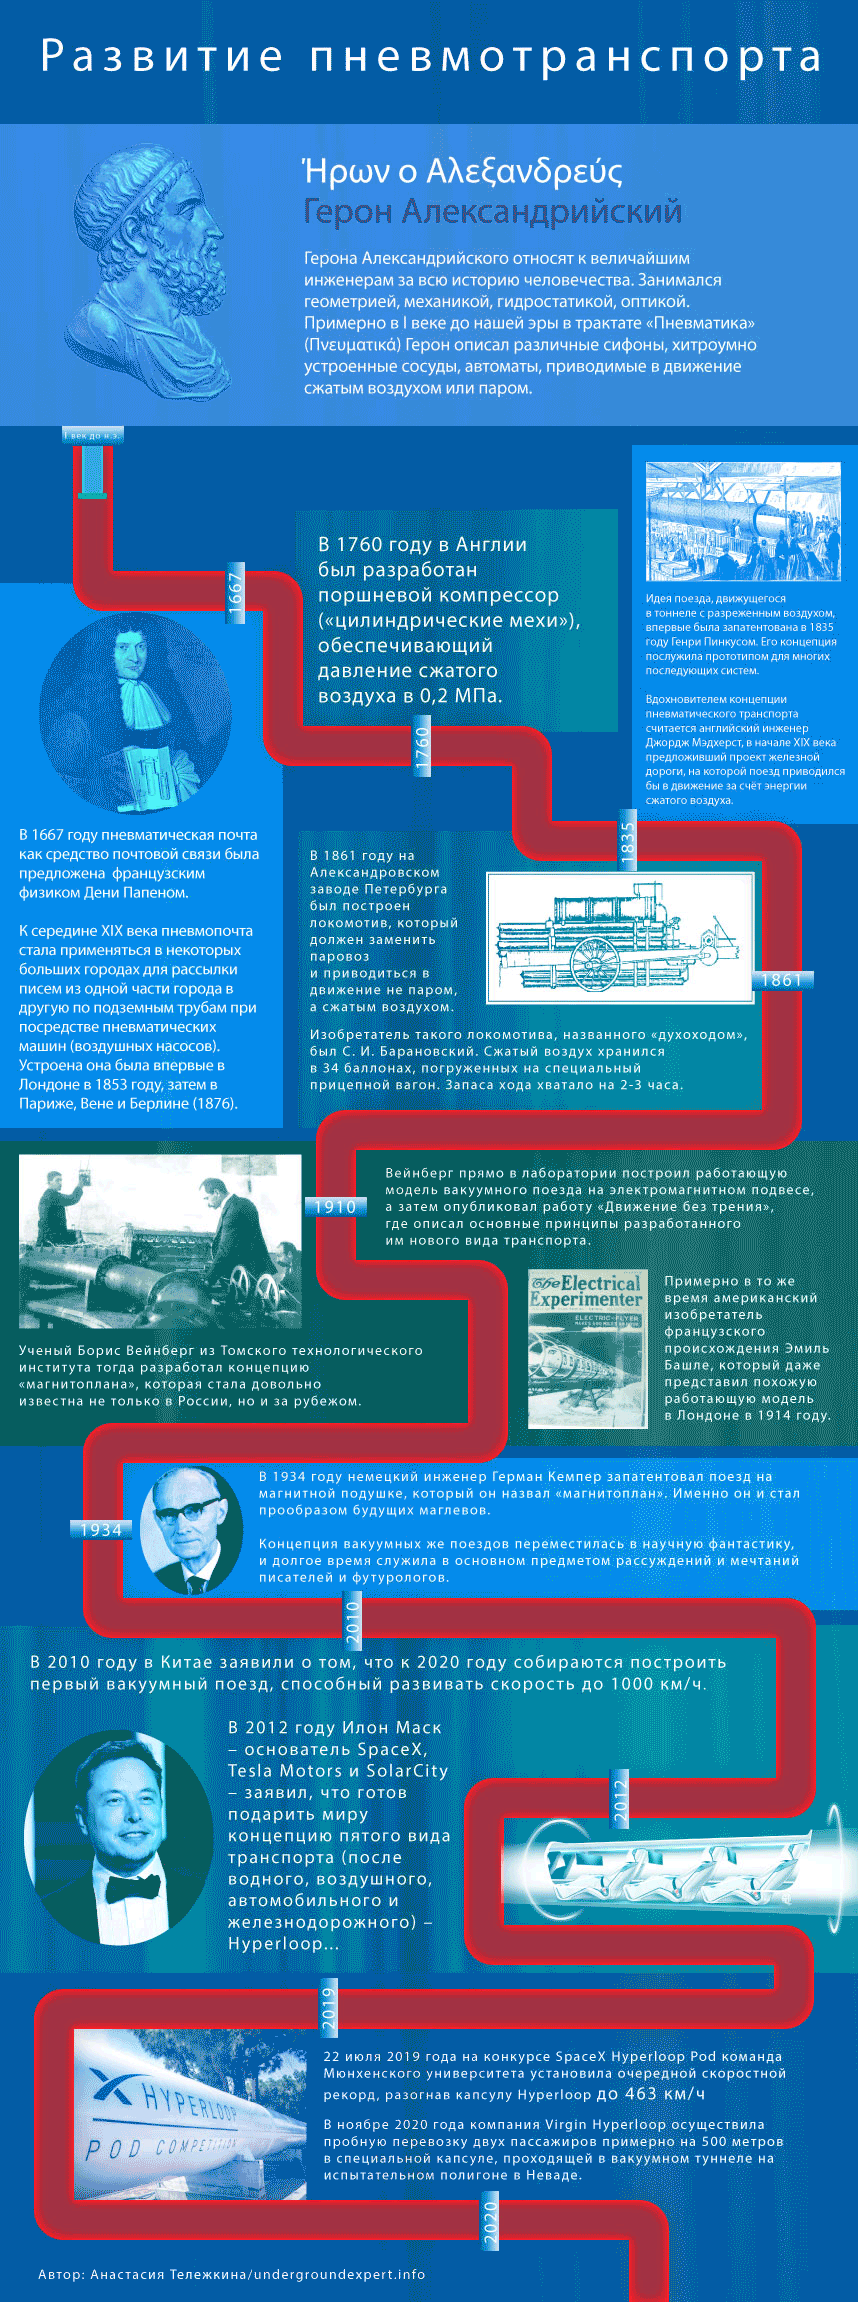 История пневмотранспорта